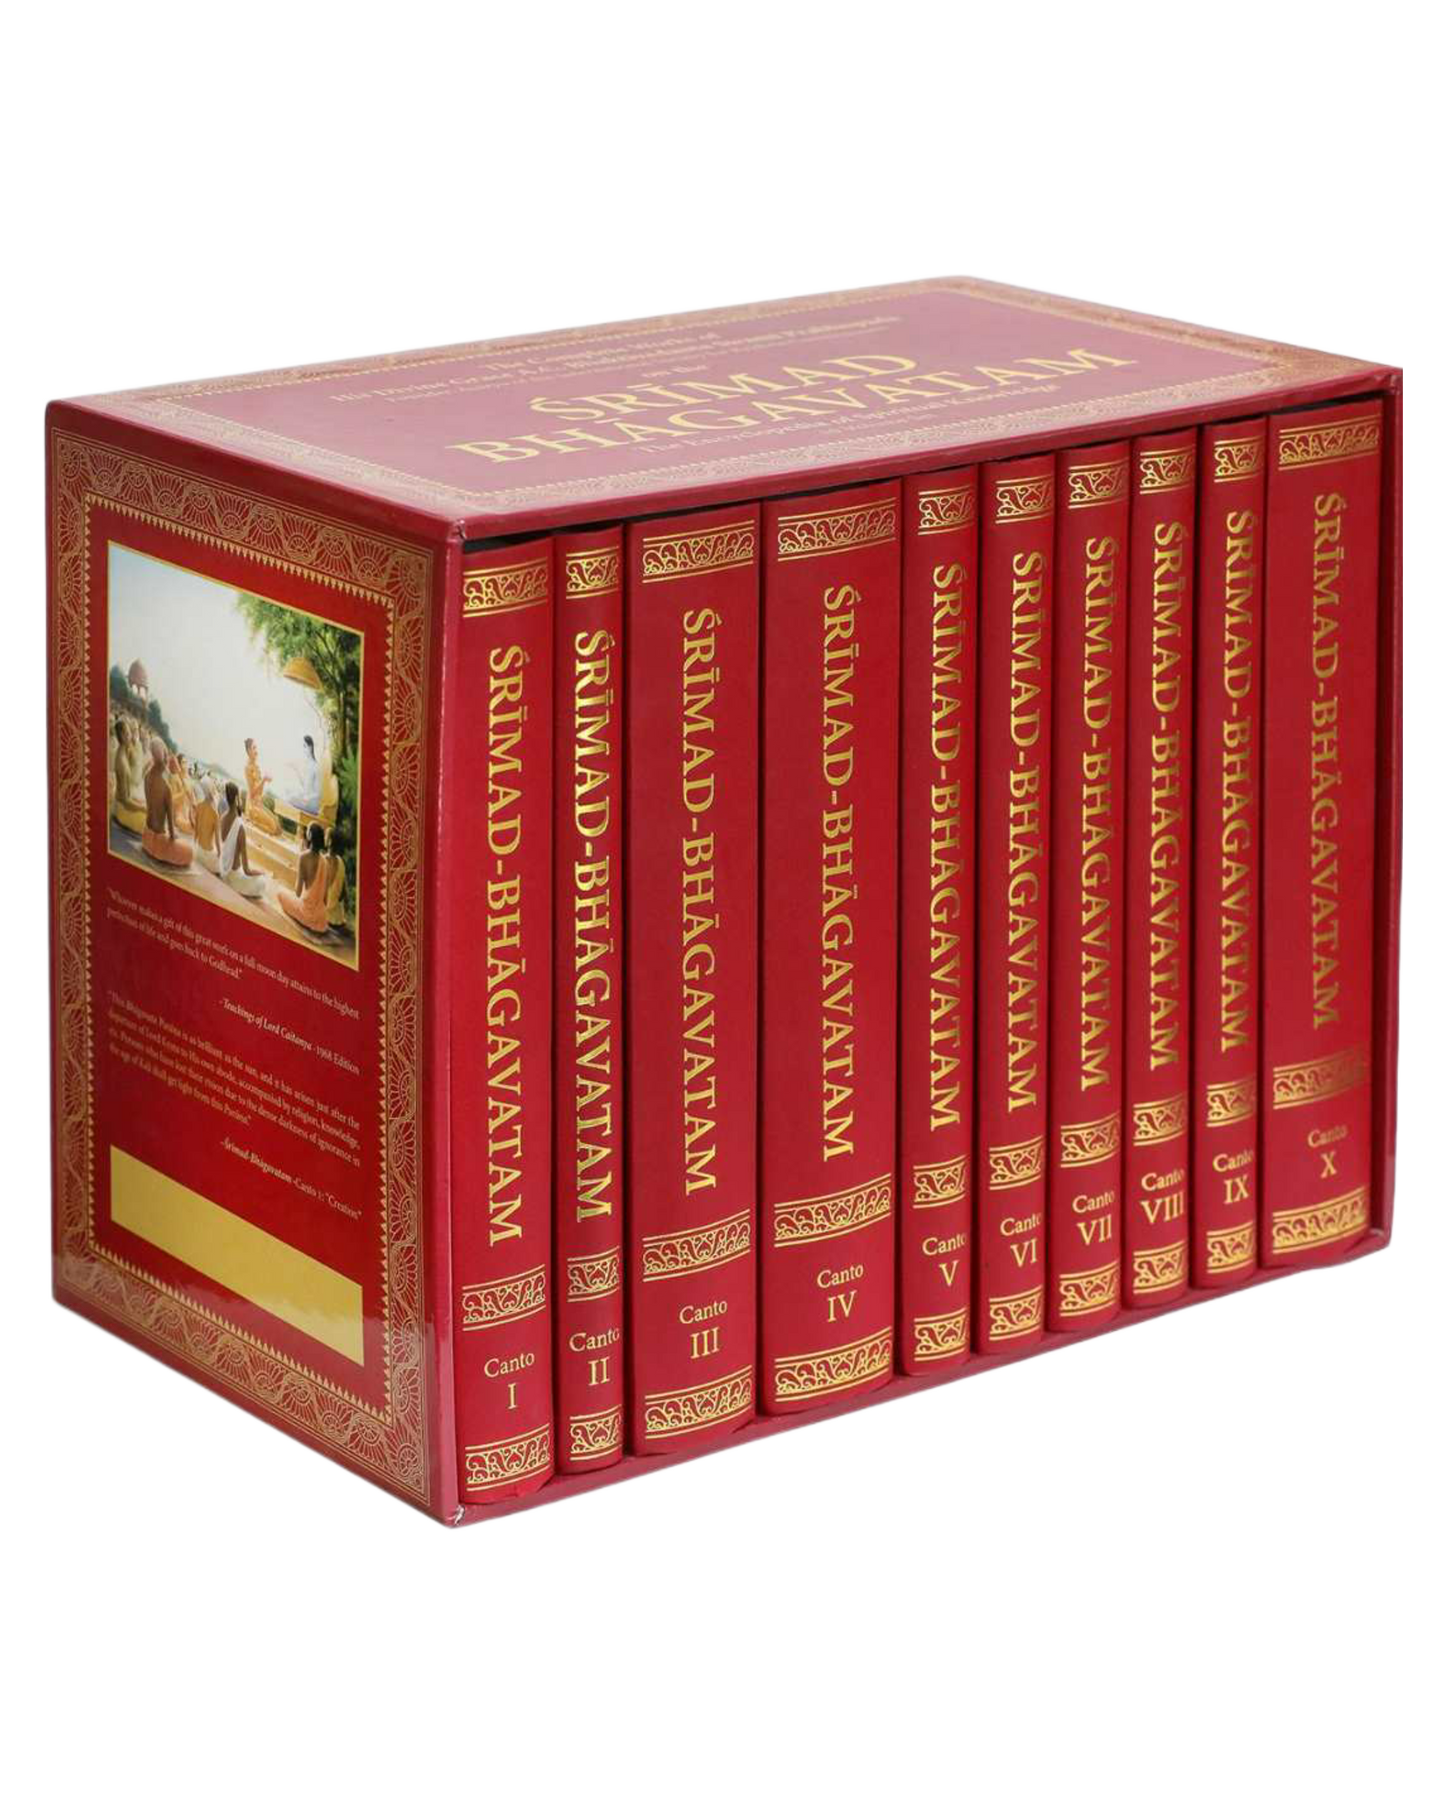 Original Srimad Bhagavatam Delux Edition Complete Set